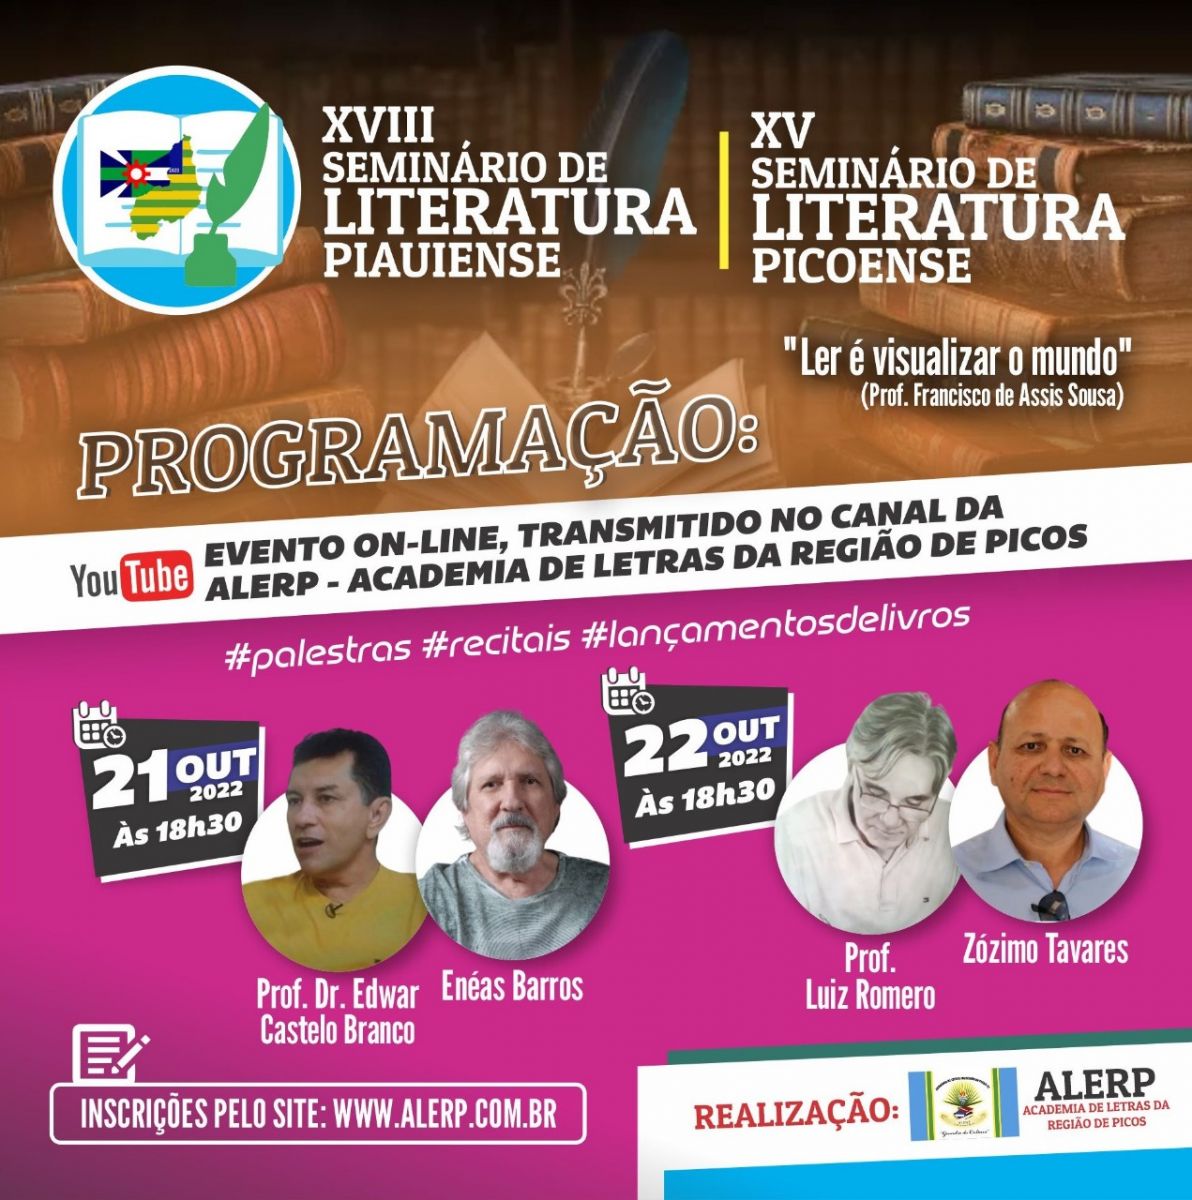 Veja a programação completa dos Seminários de Literatura da ALERP